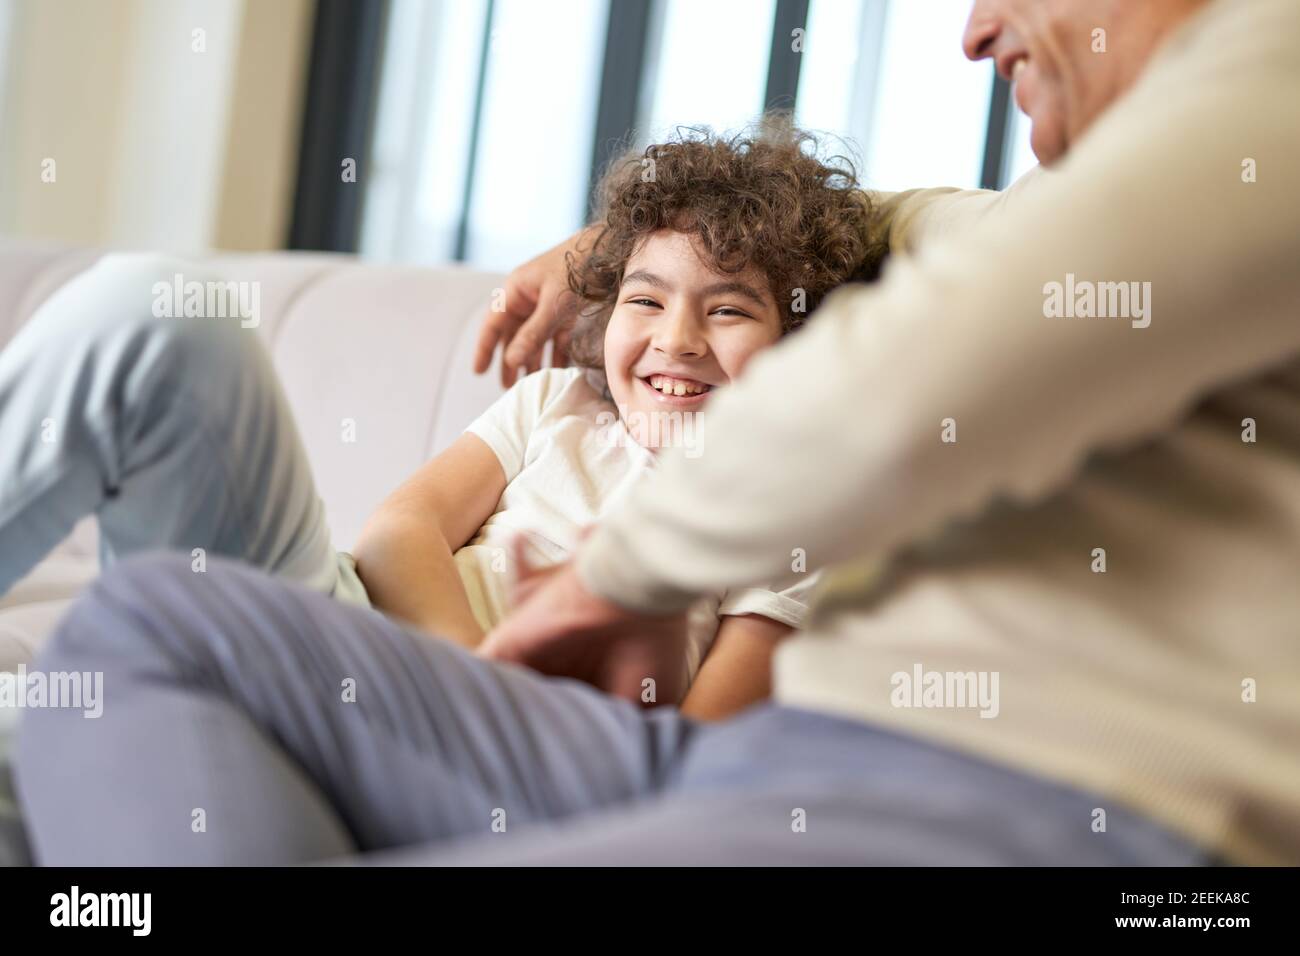 Glücklicher lateinischer Vater mittleren Alters verbringt Zeit mit seinem Sohn, spielt mit dem Kind im Wohnzimmer zu Hause. Familie, Freizeit, Vaterschaft Konzept Stockfoto